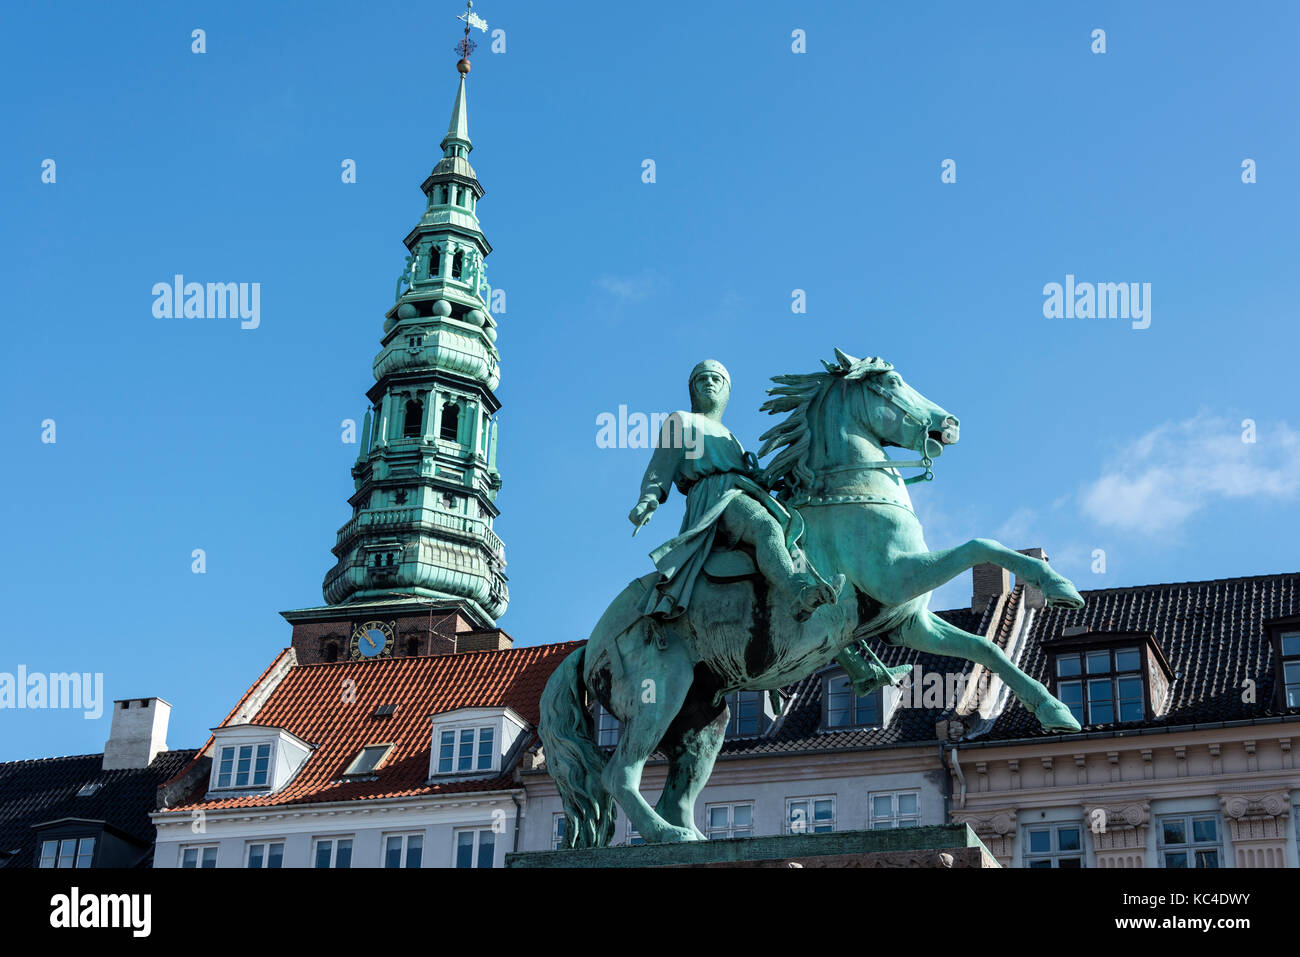 La statue équestre de l'évêque Absalon (1128 - 21 mars 1201) sur l'Hojbro Plads à Copenhague, Danemark. la statue a été inaugurée en 1902 pour marquer le Banque D'Images